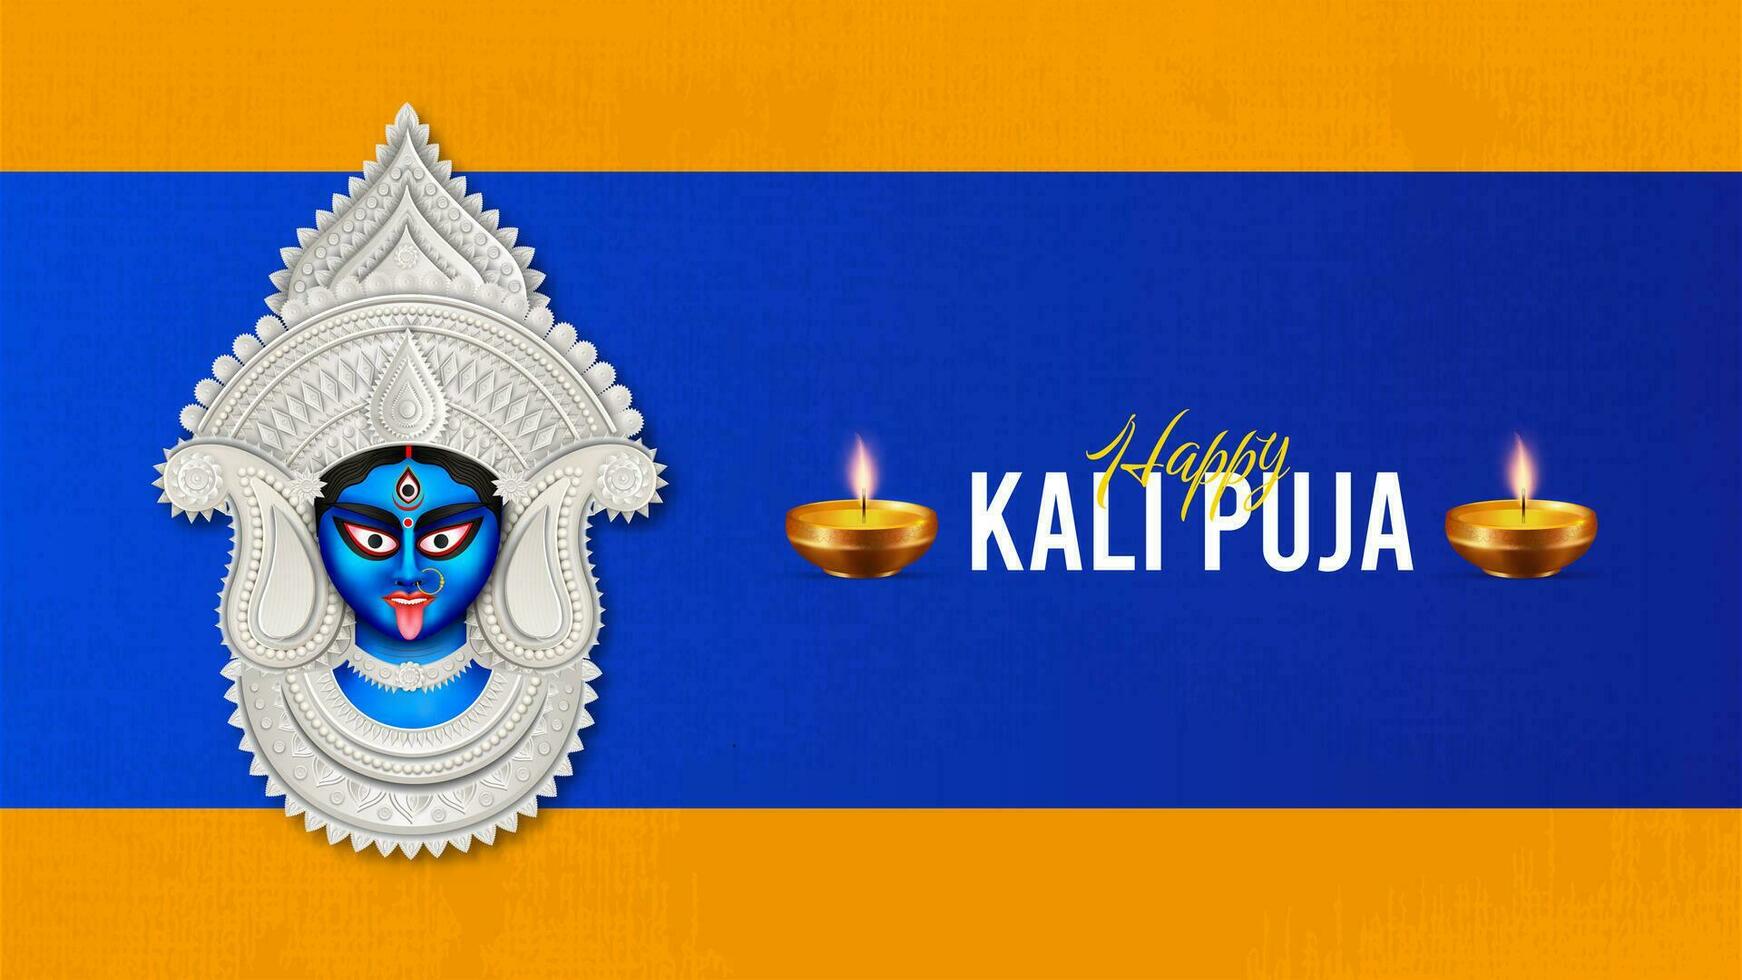 Happy Kali Puja Social Media Post vector